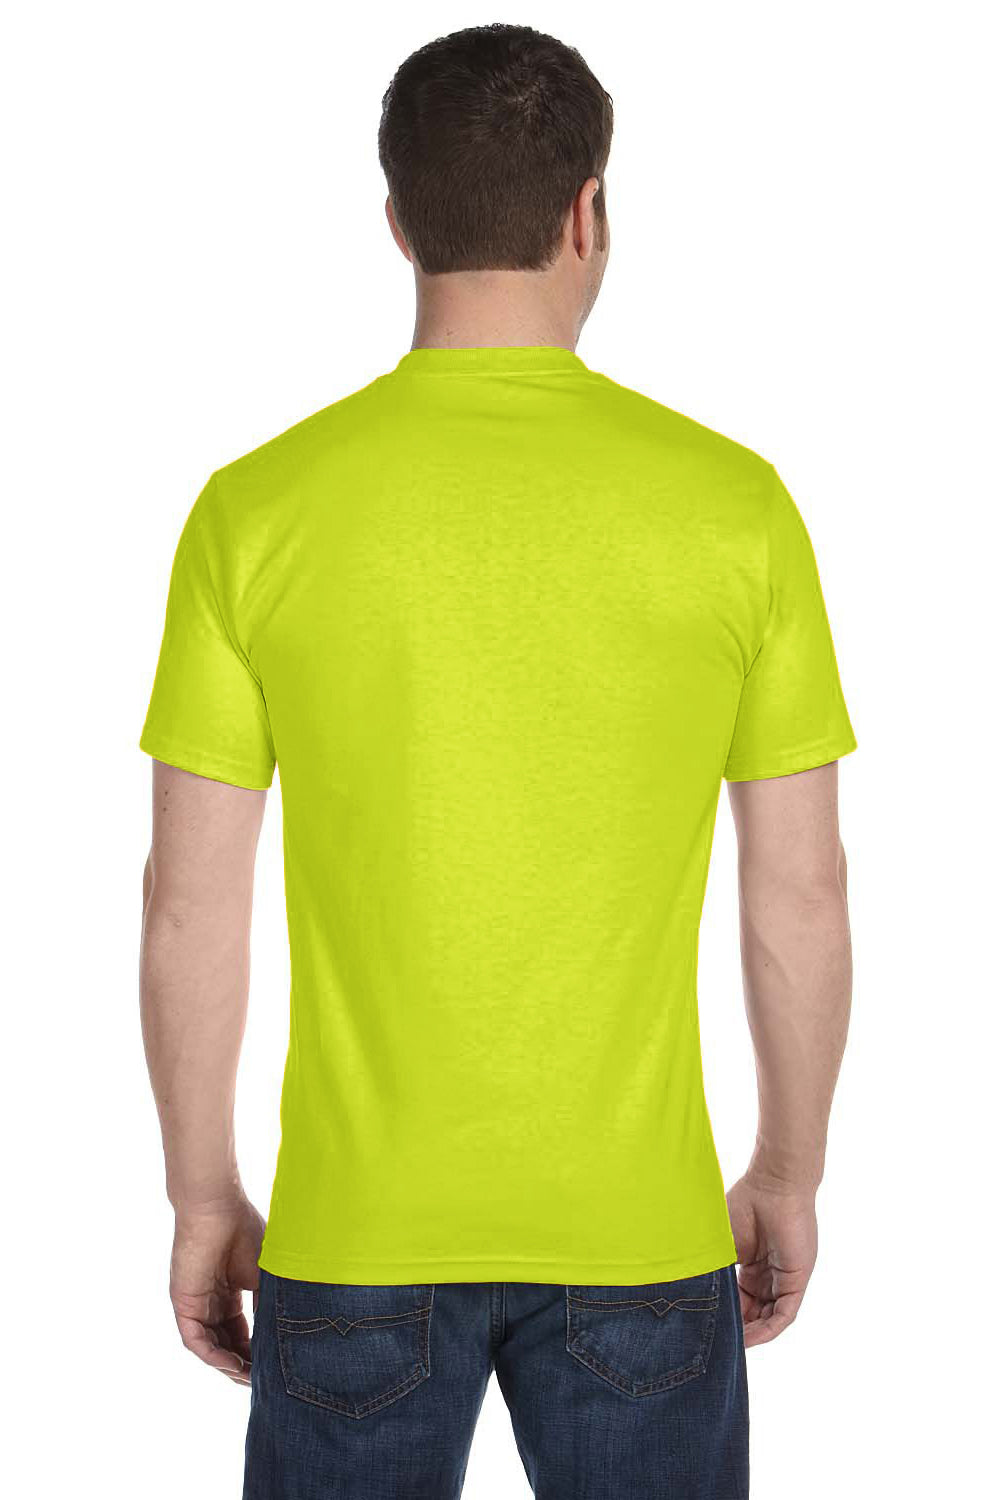 Gildan G800 Mens DryBlend Moisture Wicking Short Sleeve Crewneck T-Shirt Safety Green Back